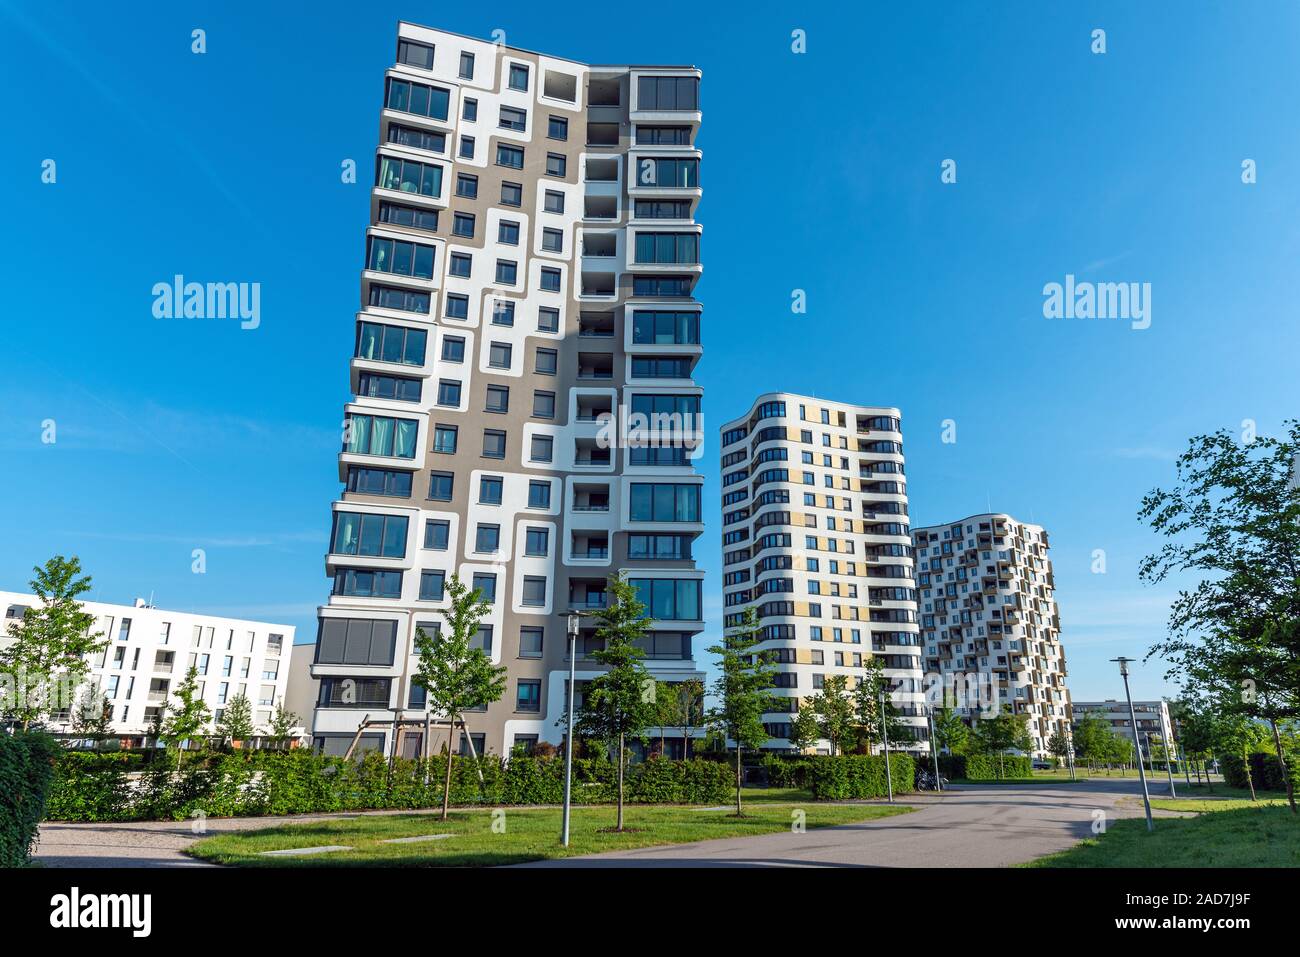 Modernos edificios residenciales de gran altura visto en Munich, Alemania. Foto de stock